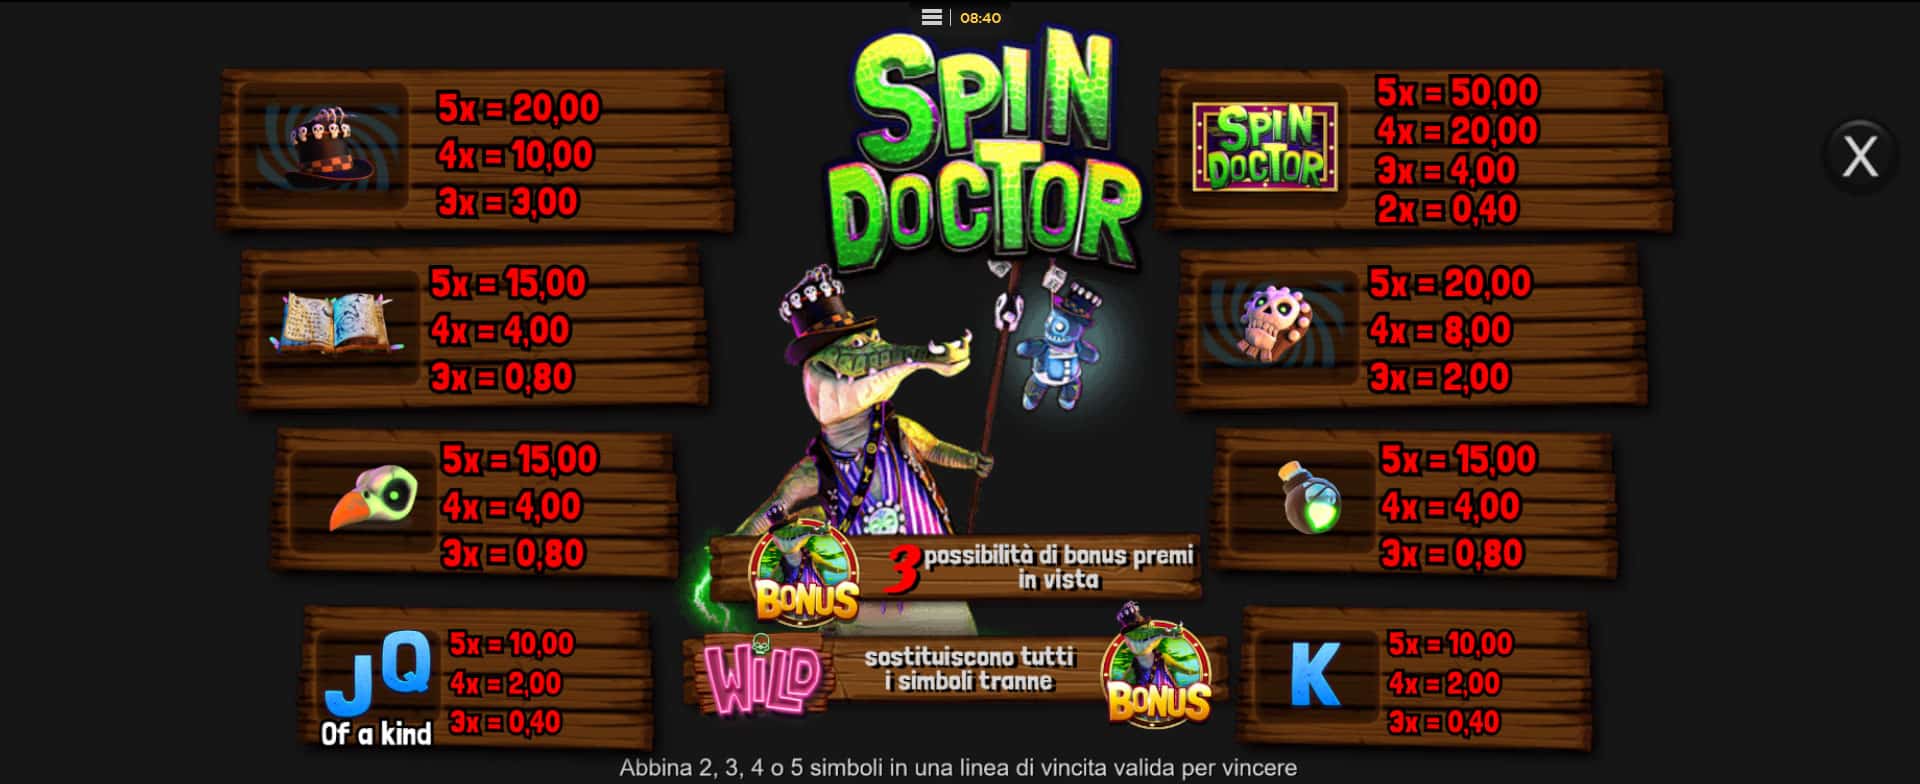 tabella dei simboli della slot online spin doctor